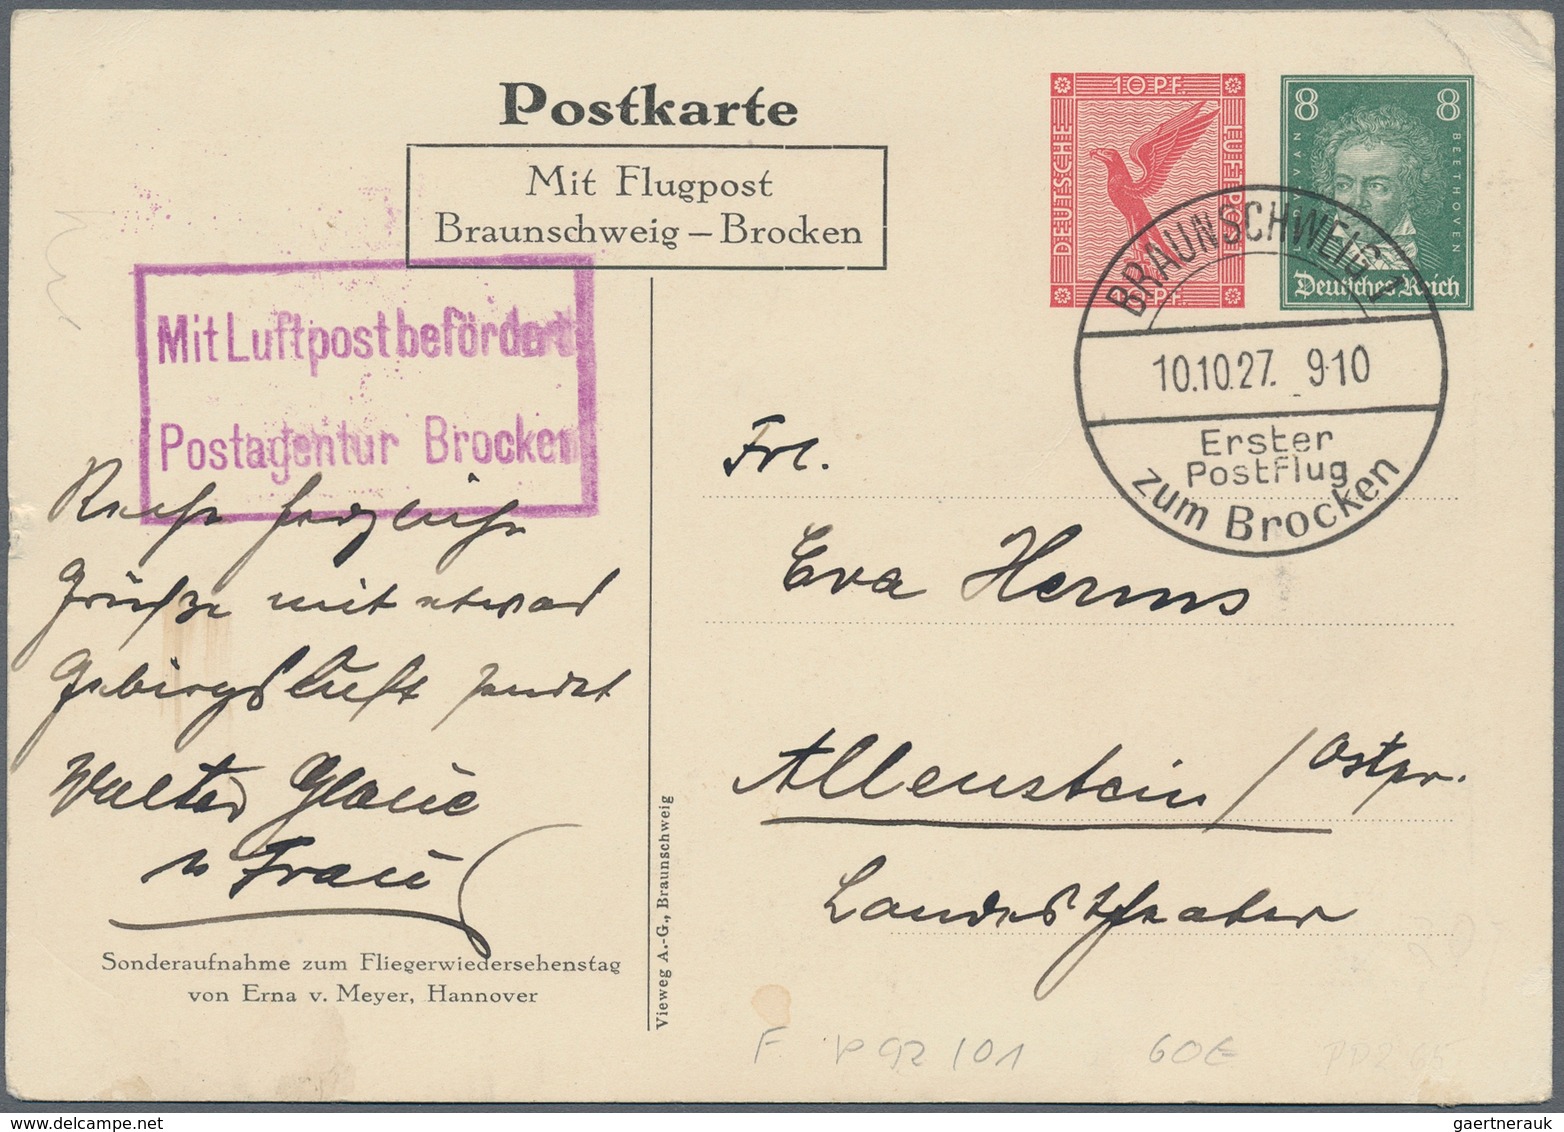 Deutsches Reich - Ganzsachen: 1874-1944, spannender Bestand mit über 1.000 Ganzsachenkarten und Umsc